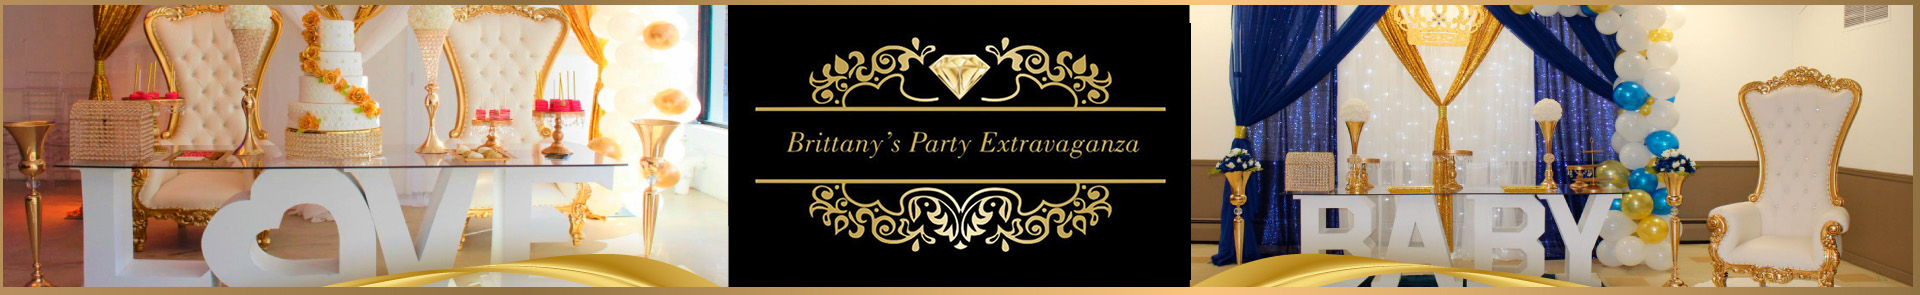 Brittany's Party Extravaganza  - Header